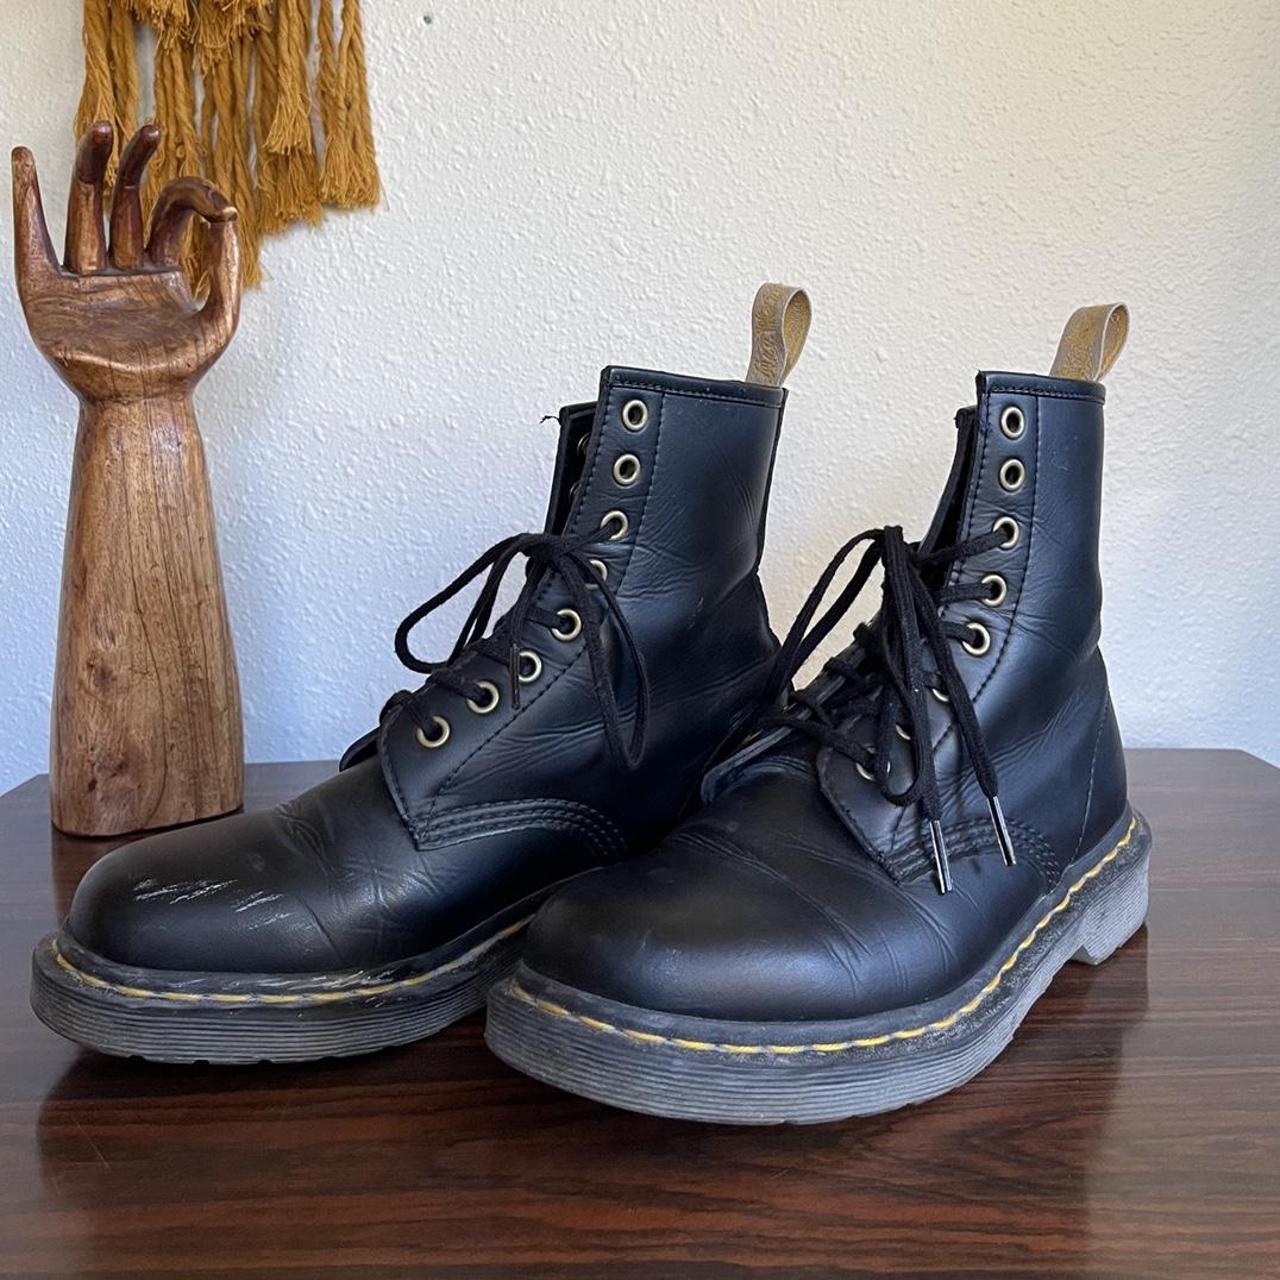 Vegan Leather Dr Marten’s lace up boots 14045 lace... - Depop